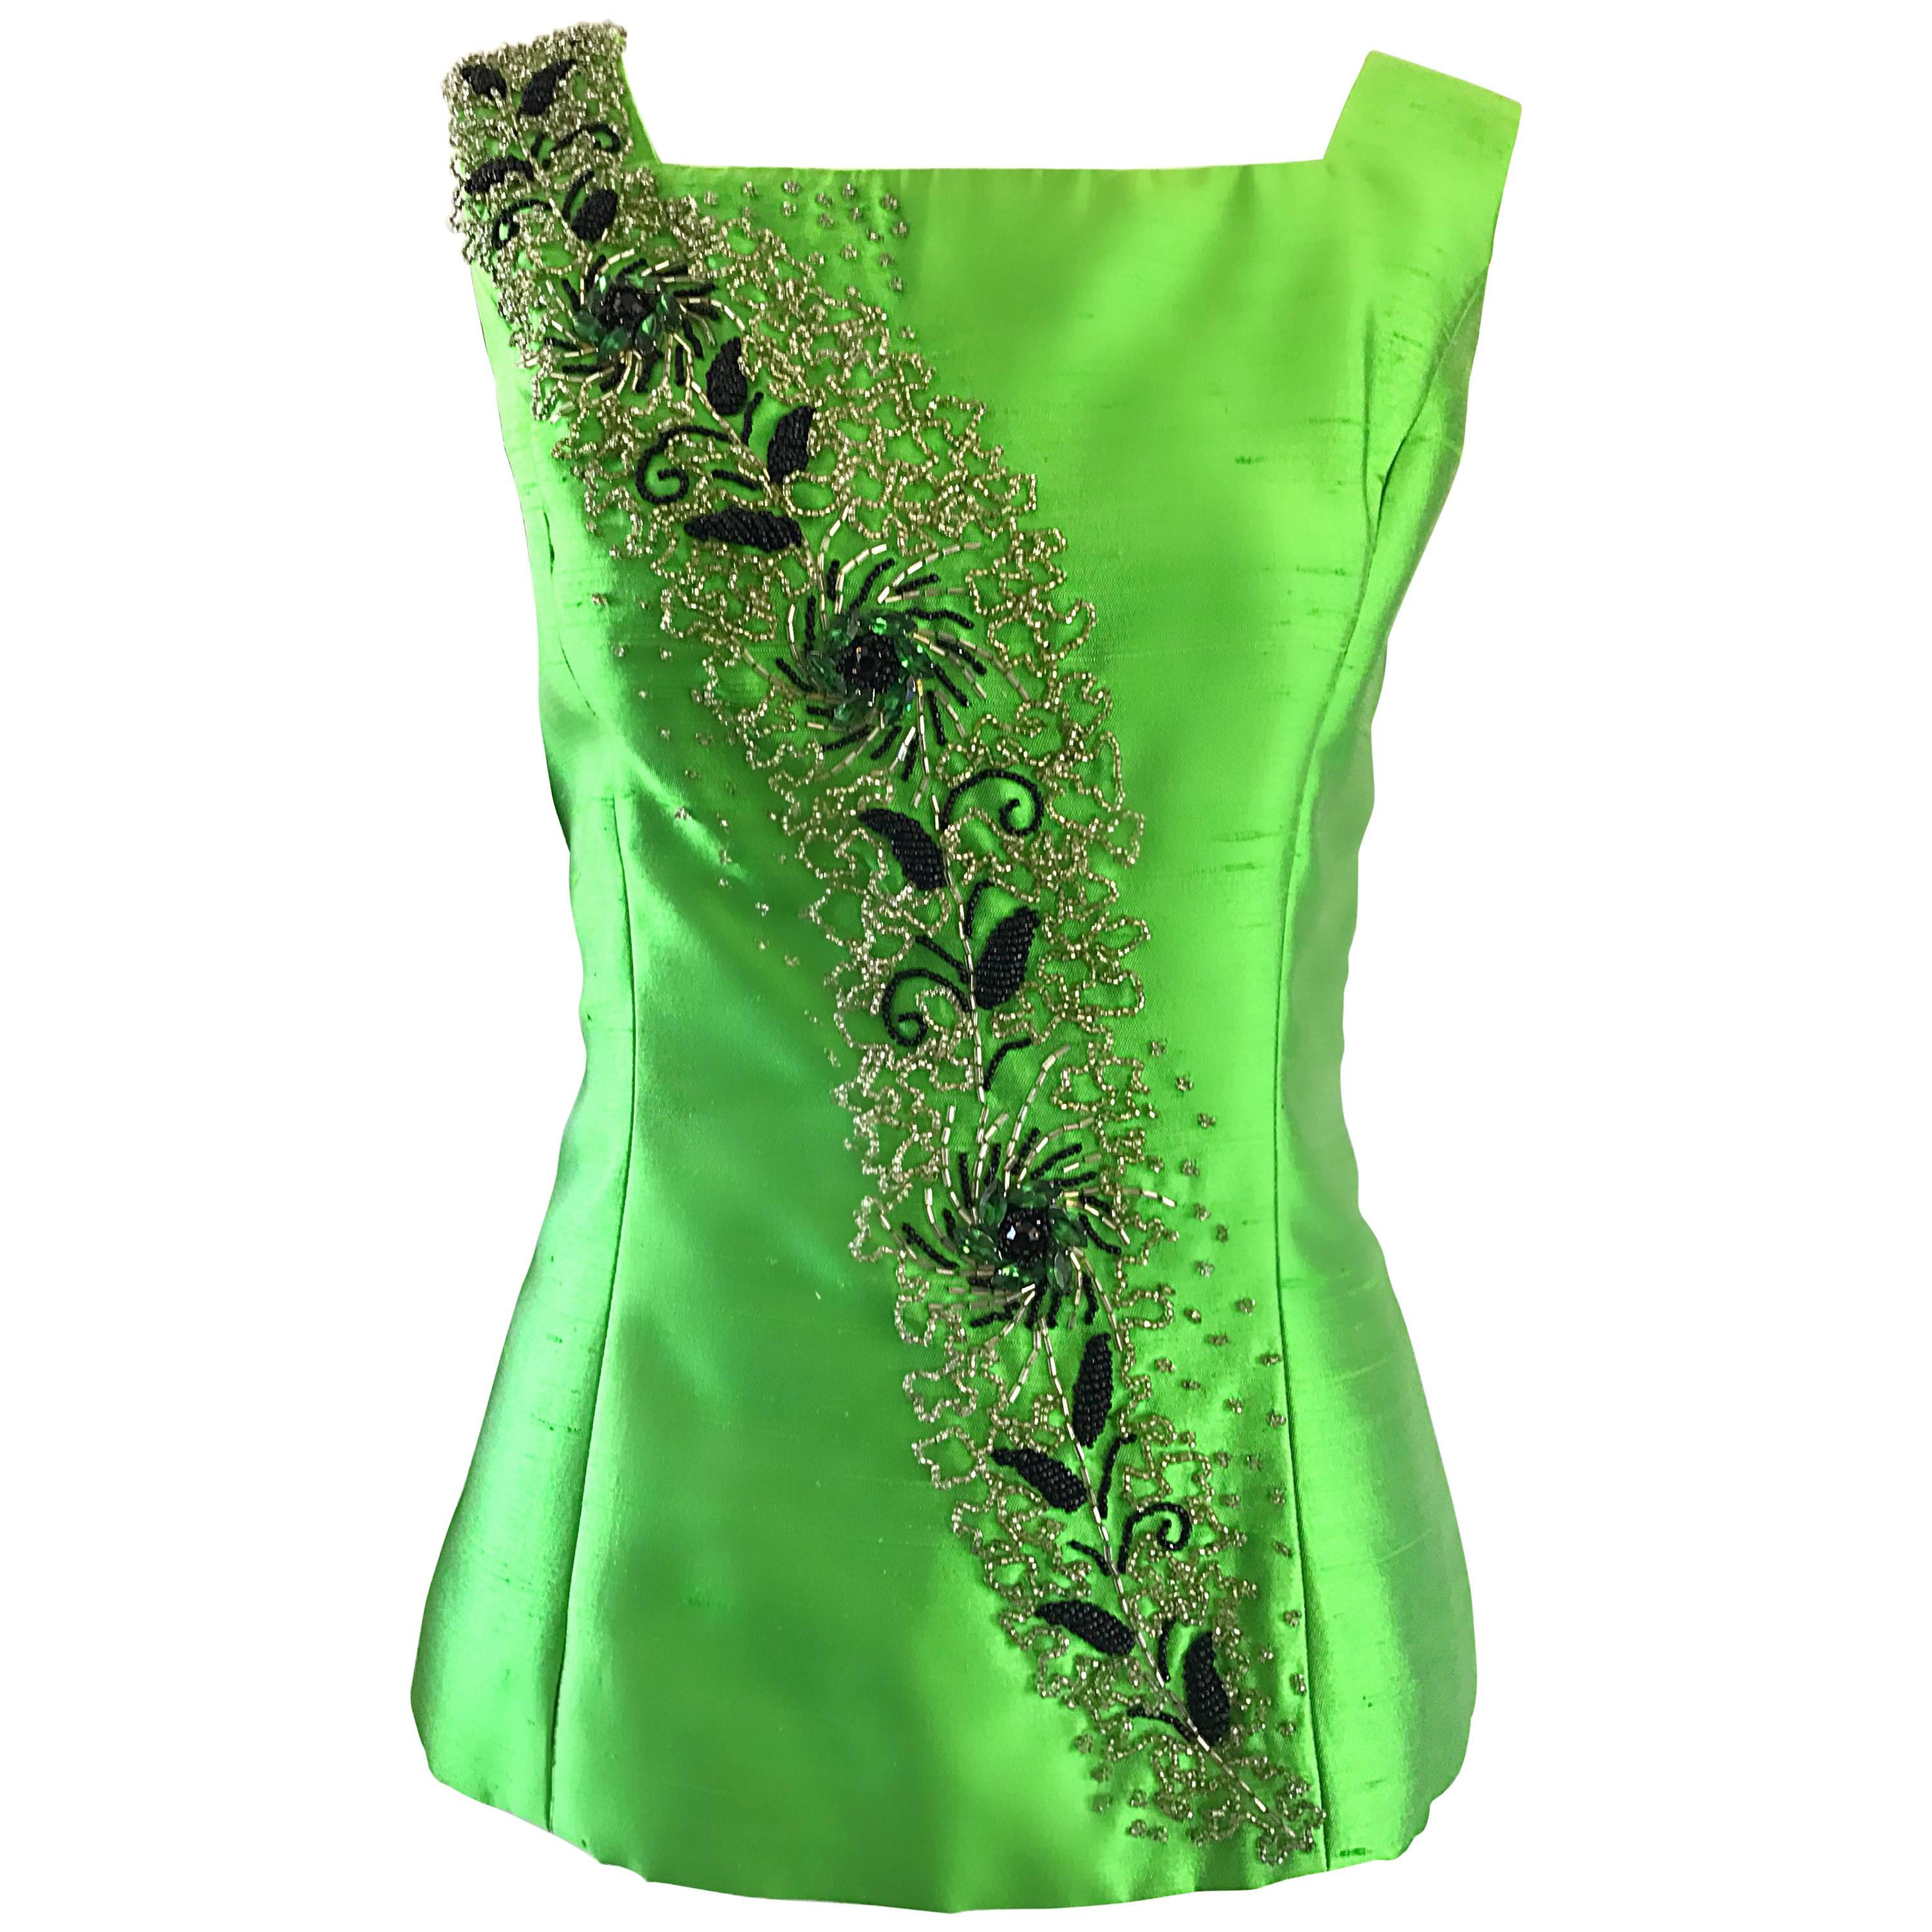 Wunderschönes 1950er Jahre Grünes ärmelloses Shantung-Bluse-Top aus Seide mit Perlen und Kristall-Couture-Kristall